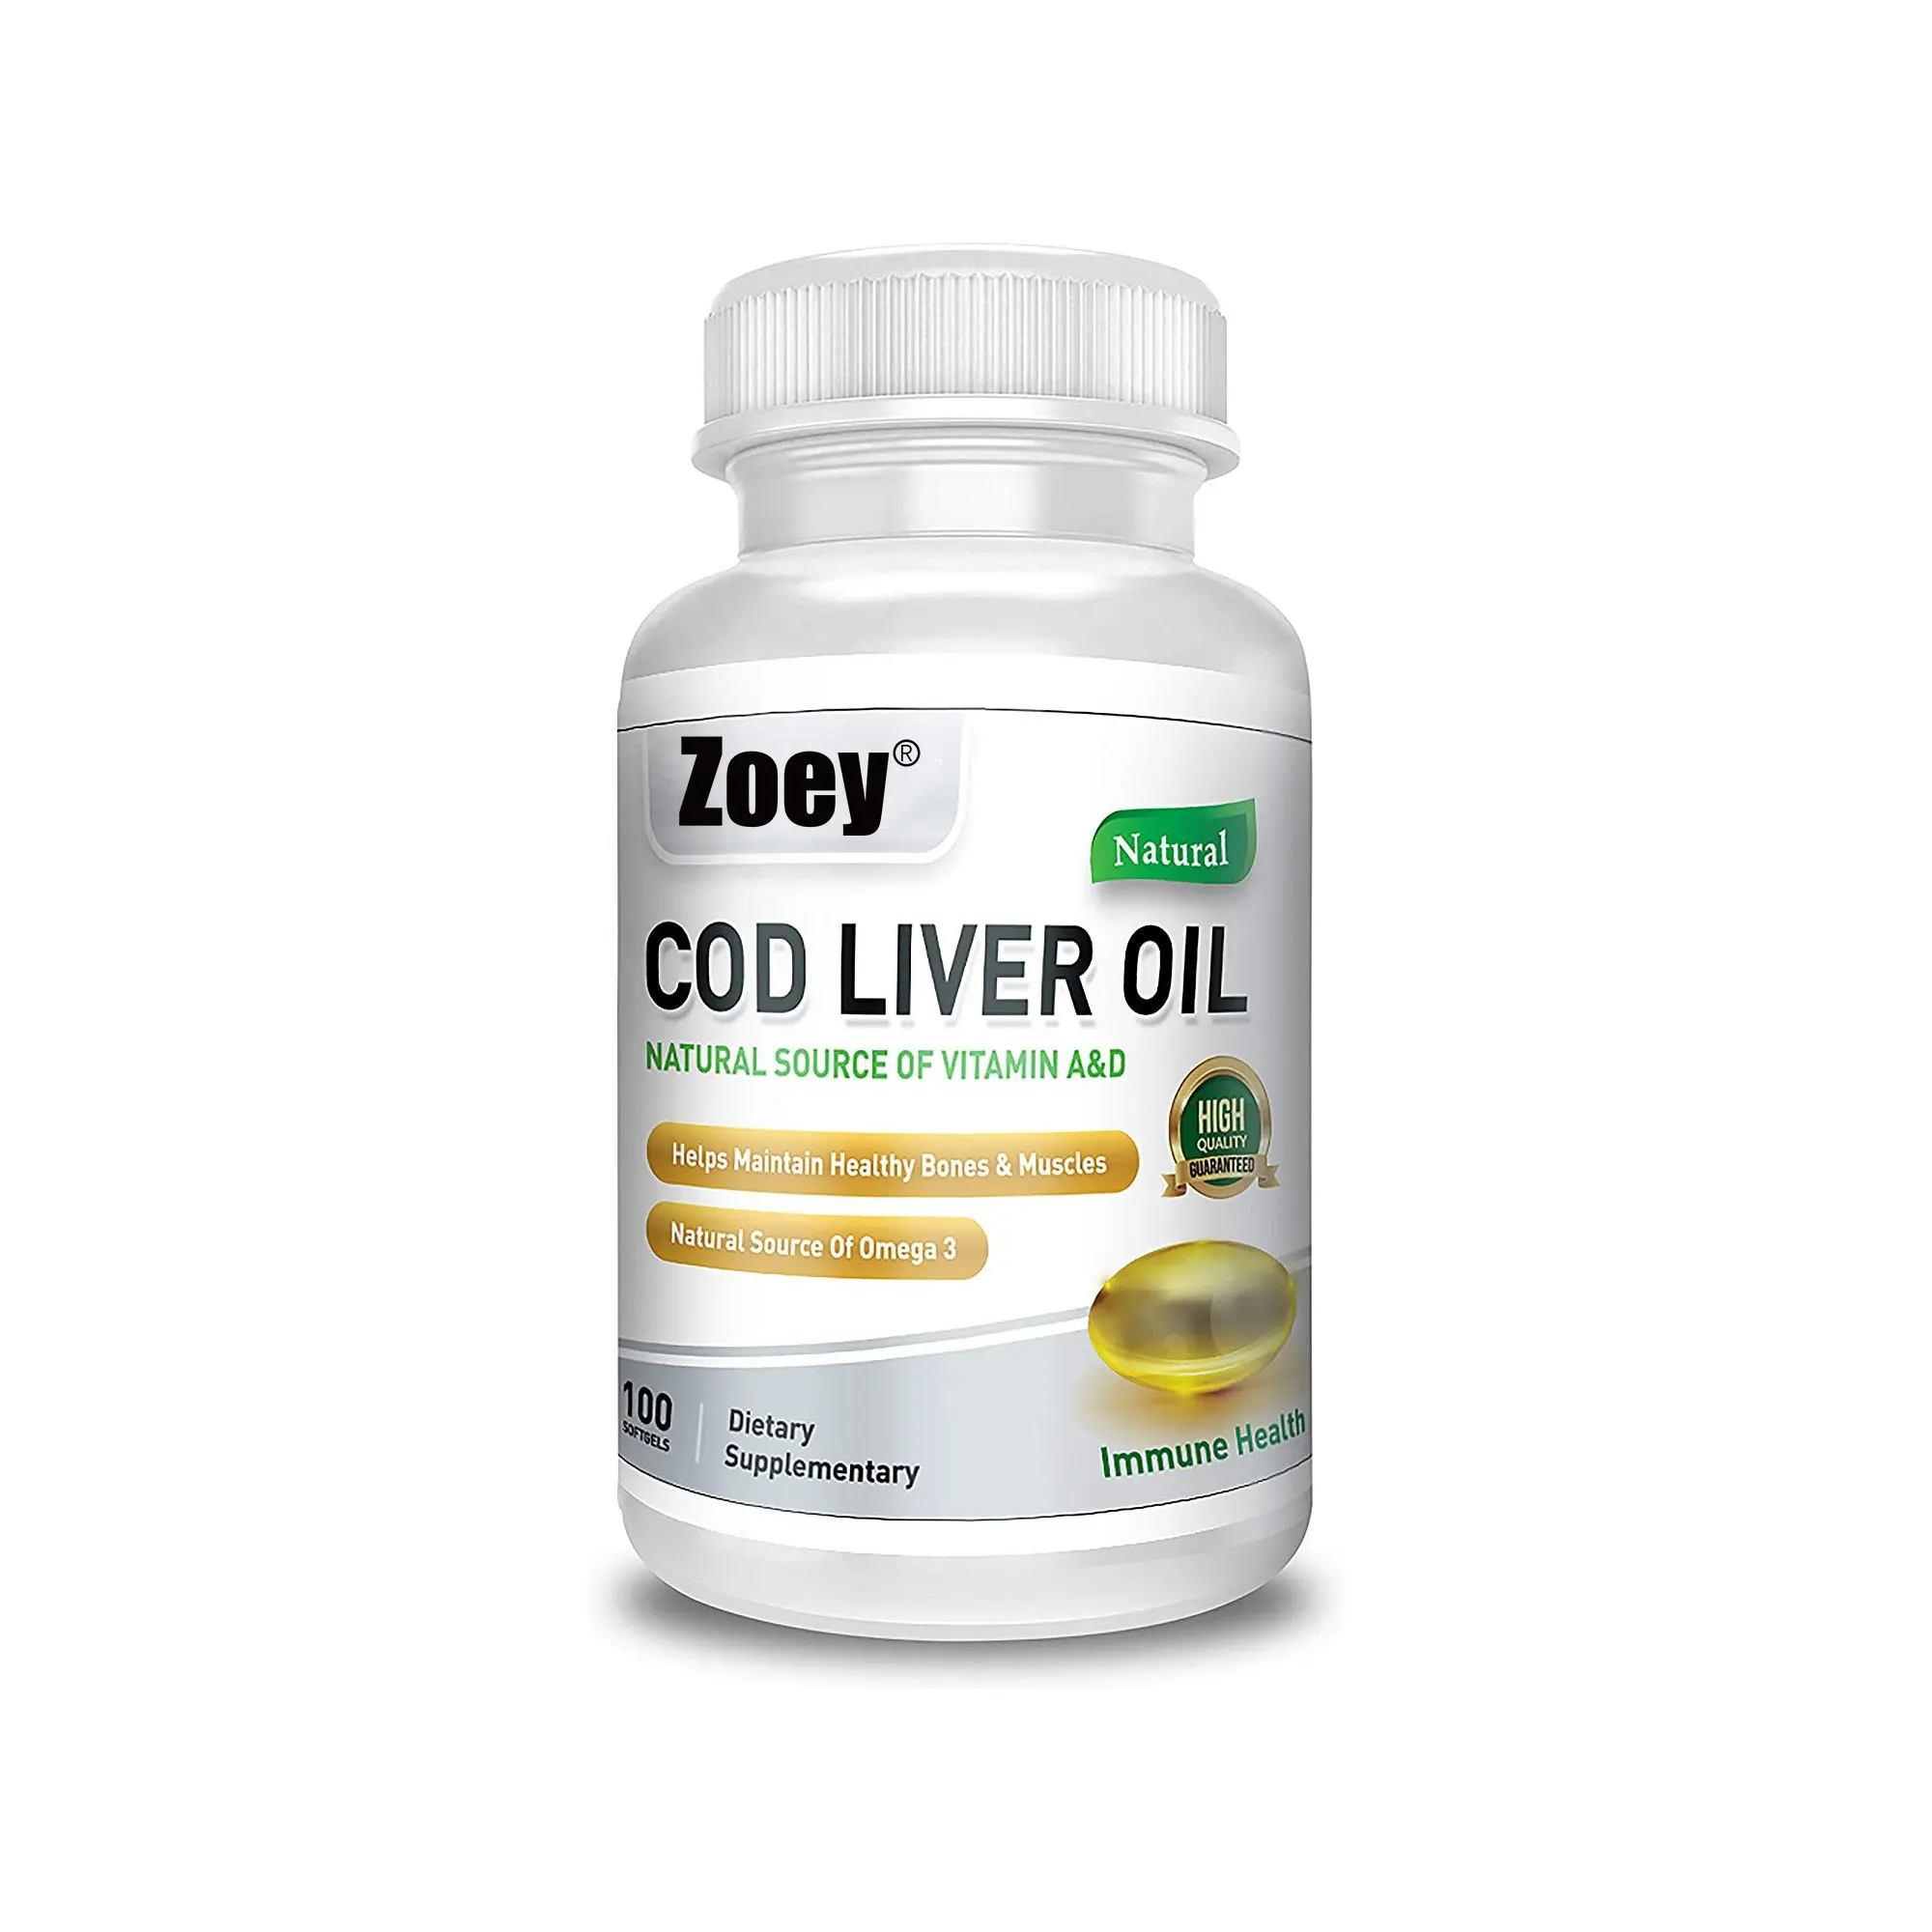 कॉड लिवर तेल की 100 Softgels प्राकृतिक स्रोत ओमेगा 3 फैटी एसिड ट्रिपल शक्ति सबसे अच्छा प्रतिरक्षा स्वास्थ्य स्वस्थ हड्डियों और मांसपेशियों